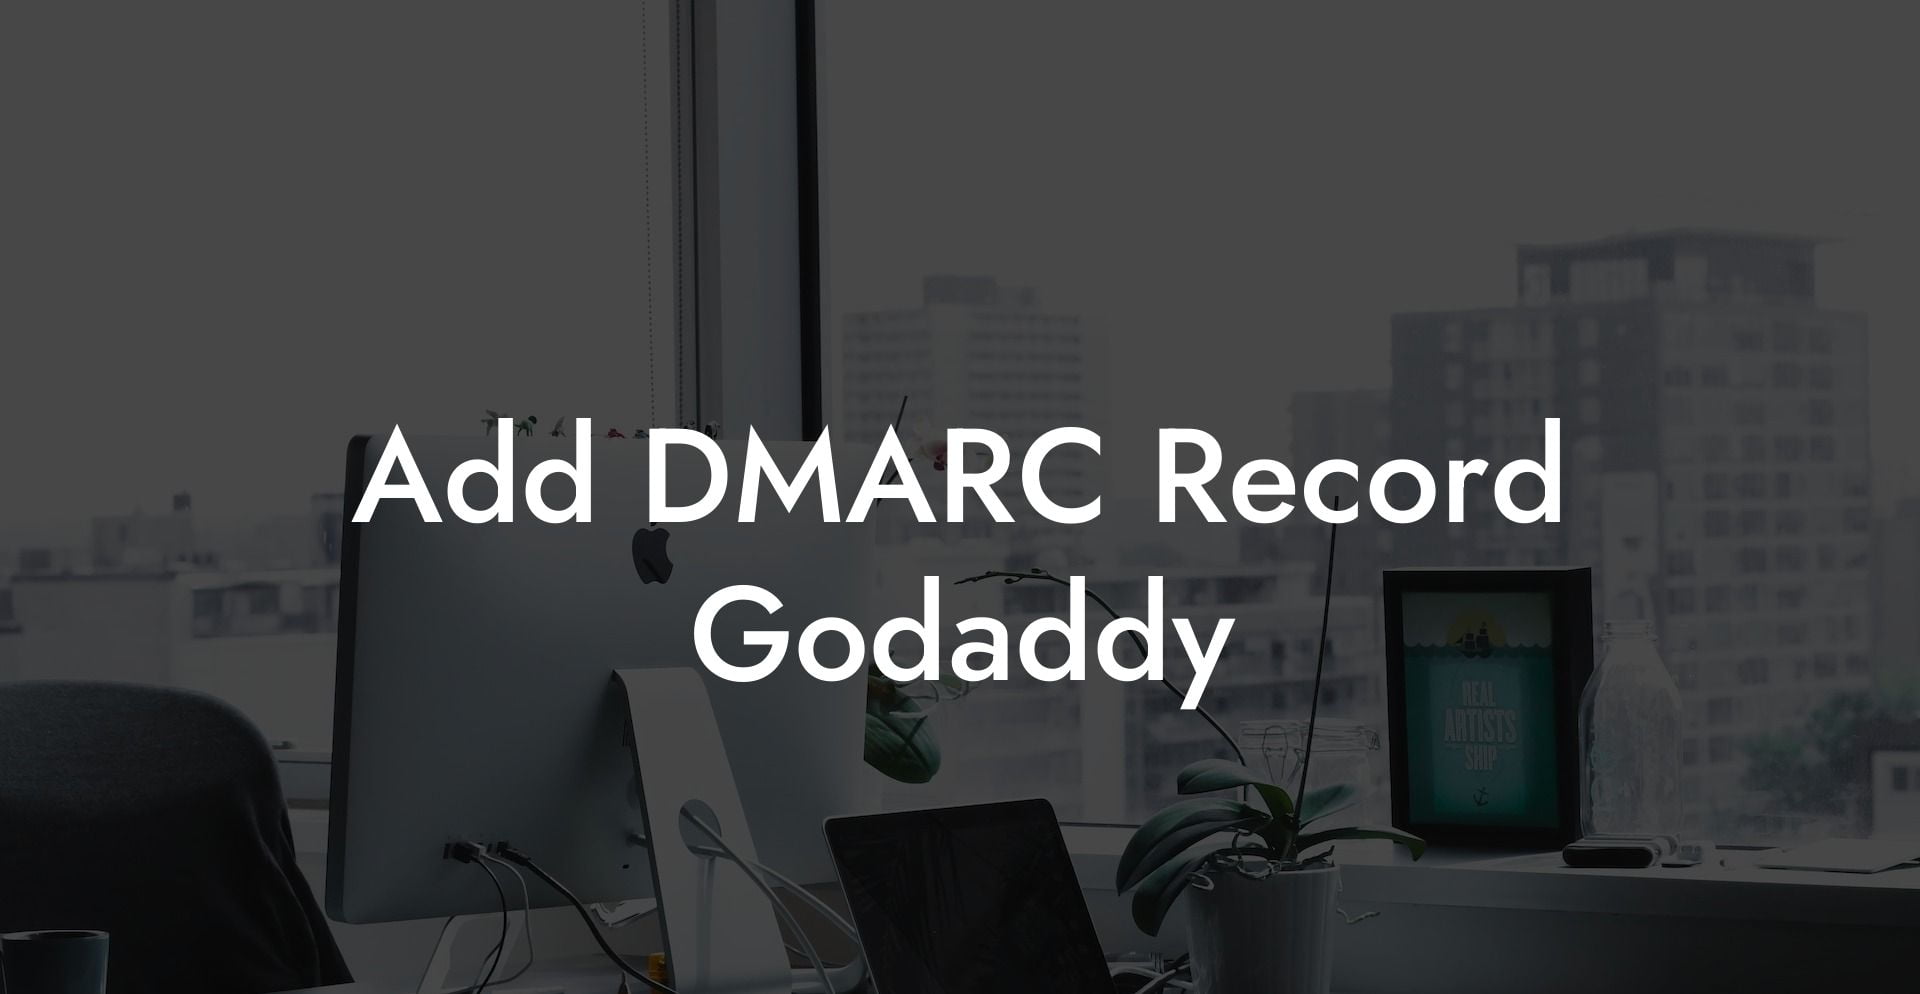 Add DMARC Record Godaddy